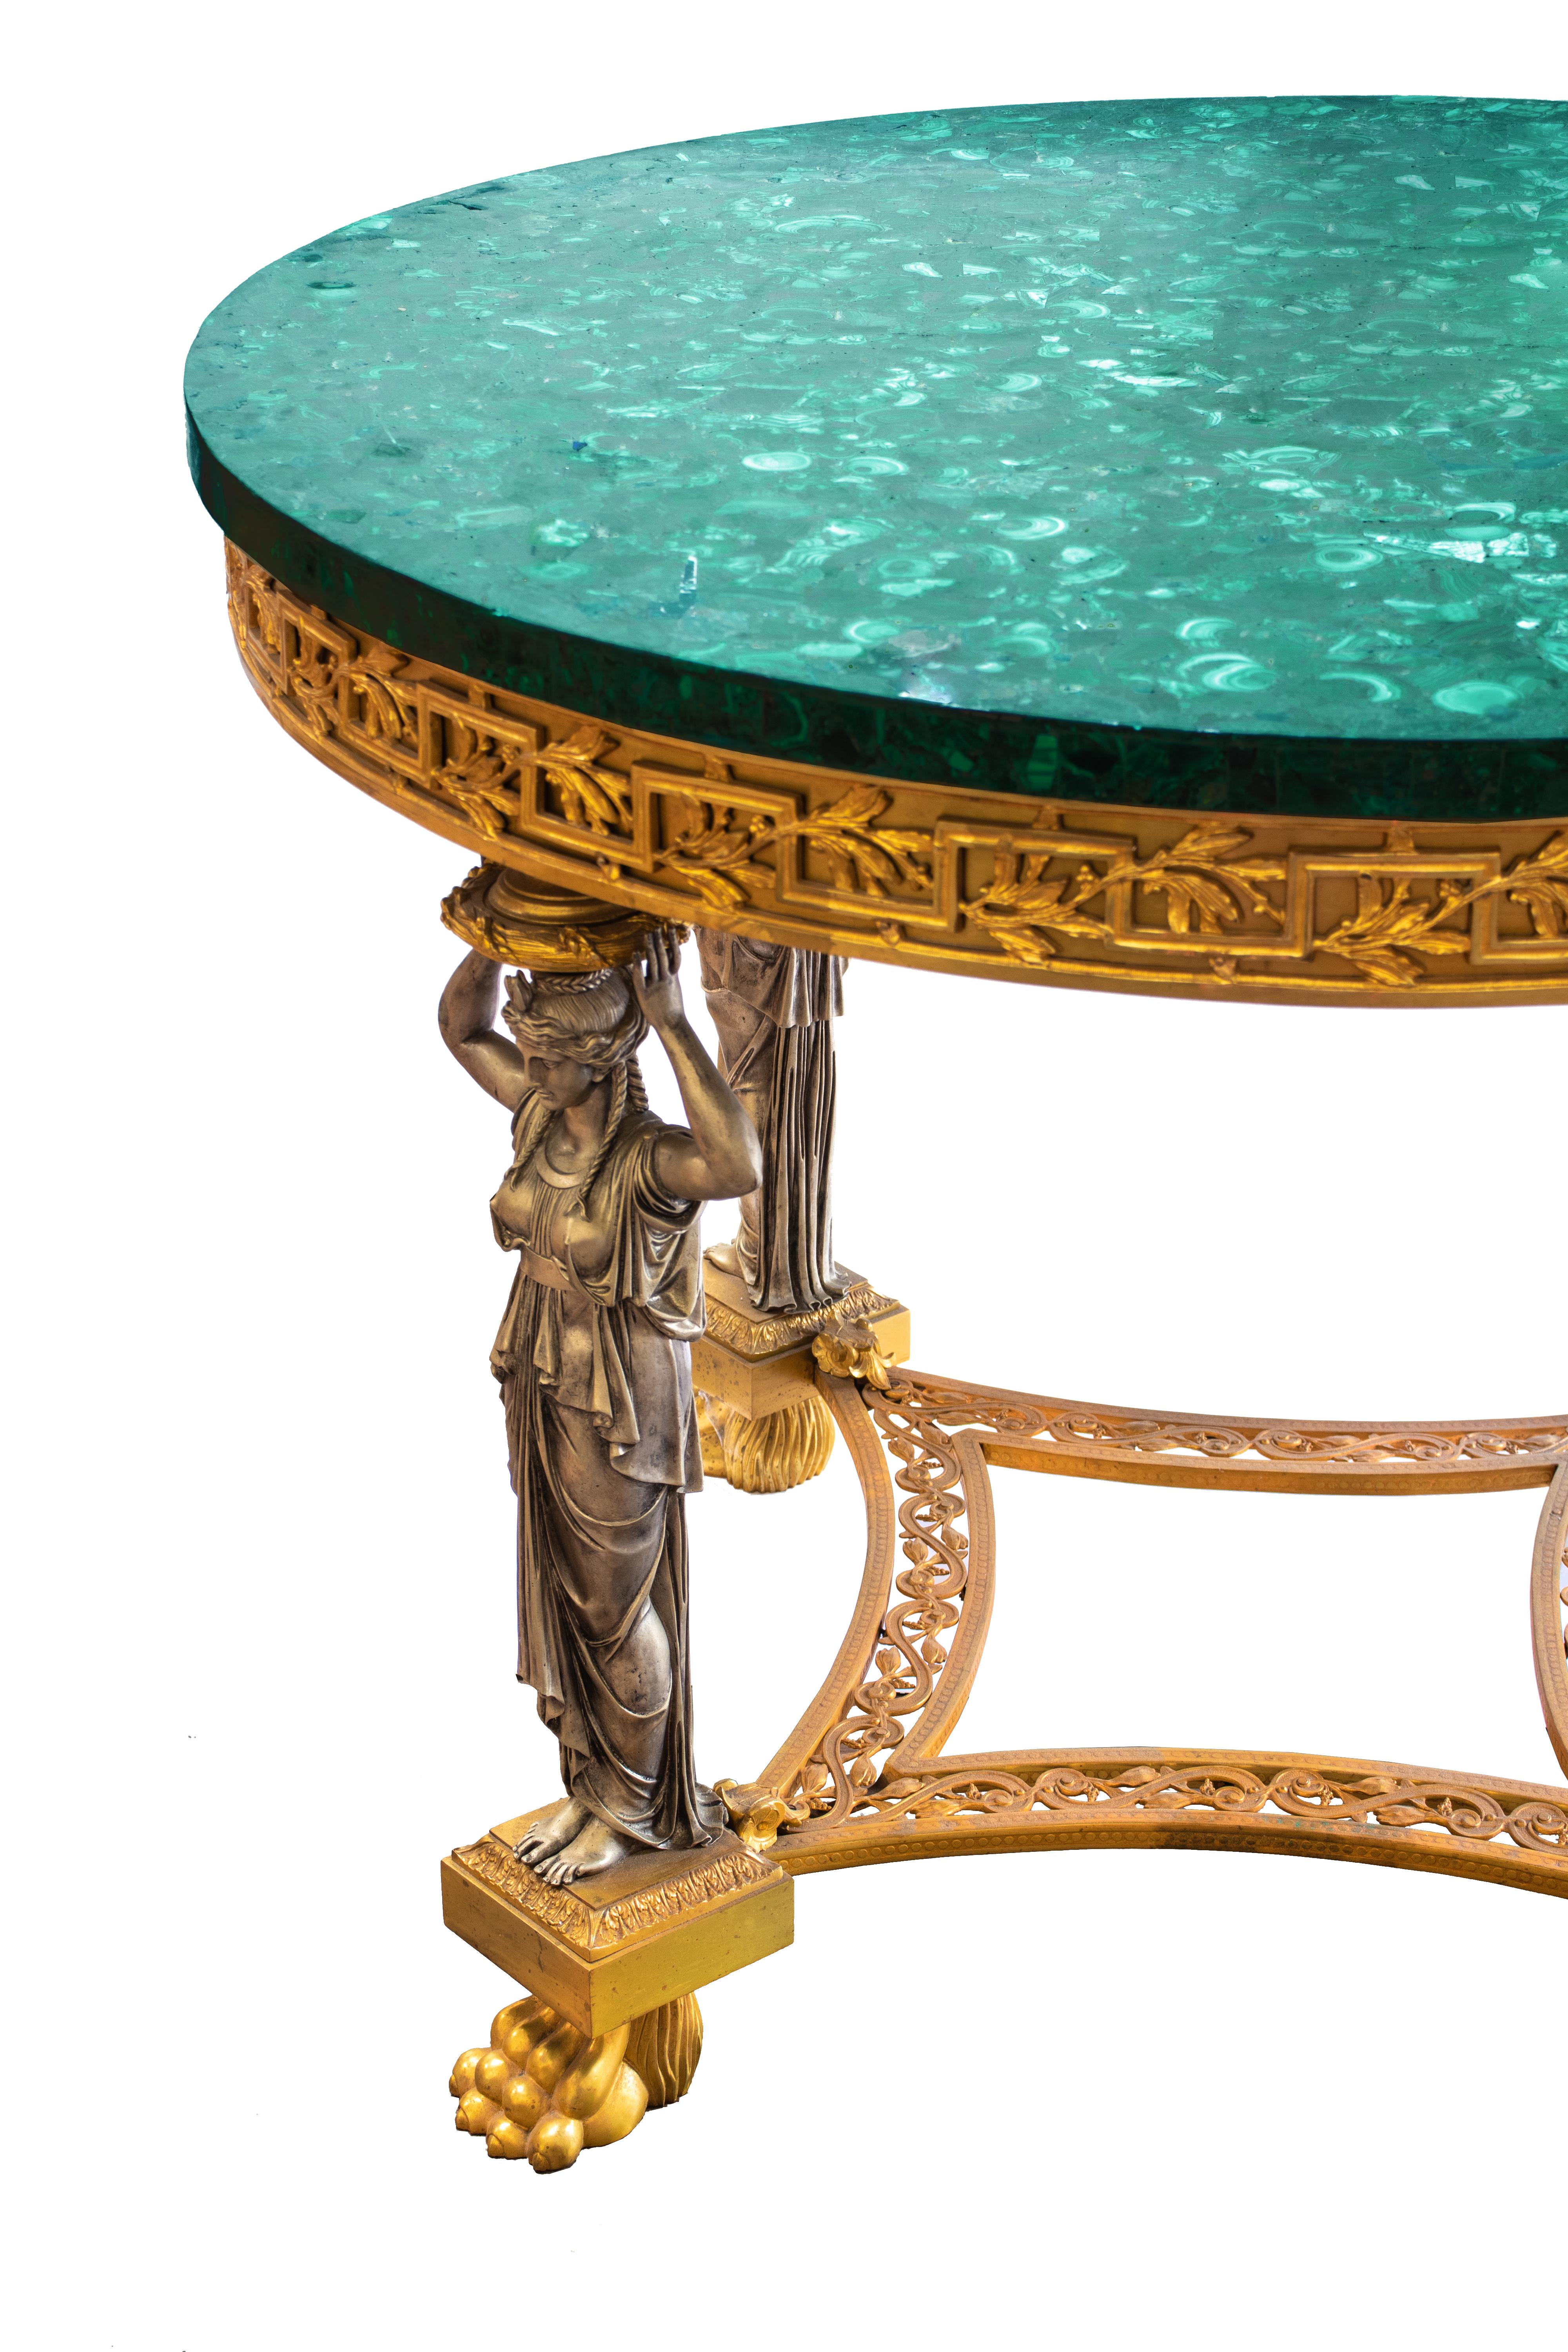 Table centrale ronde de style néoclassique avec un superbe plateau en placage de malachite. La base est en bronze argenté et doré, avec quatre cariatides sur des pieds griffus, supportant un bord massif. Les pieds sont reliés par des plaques courbes